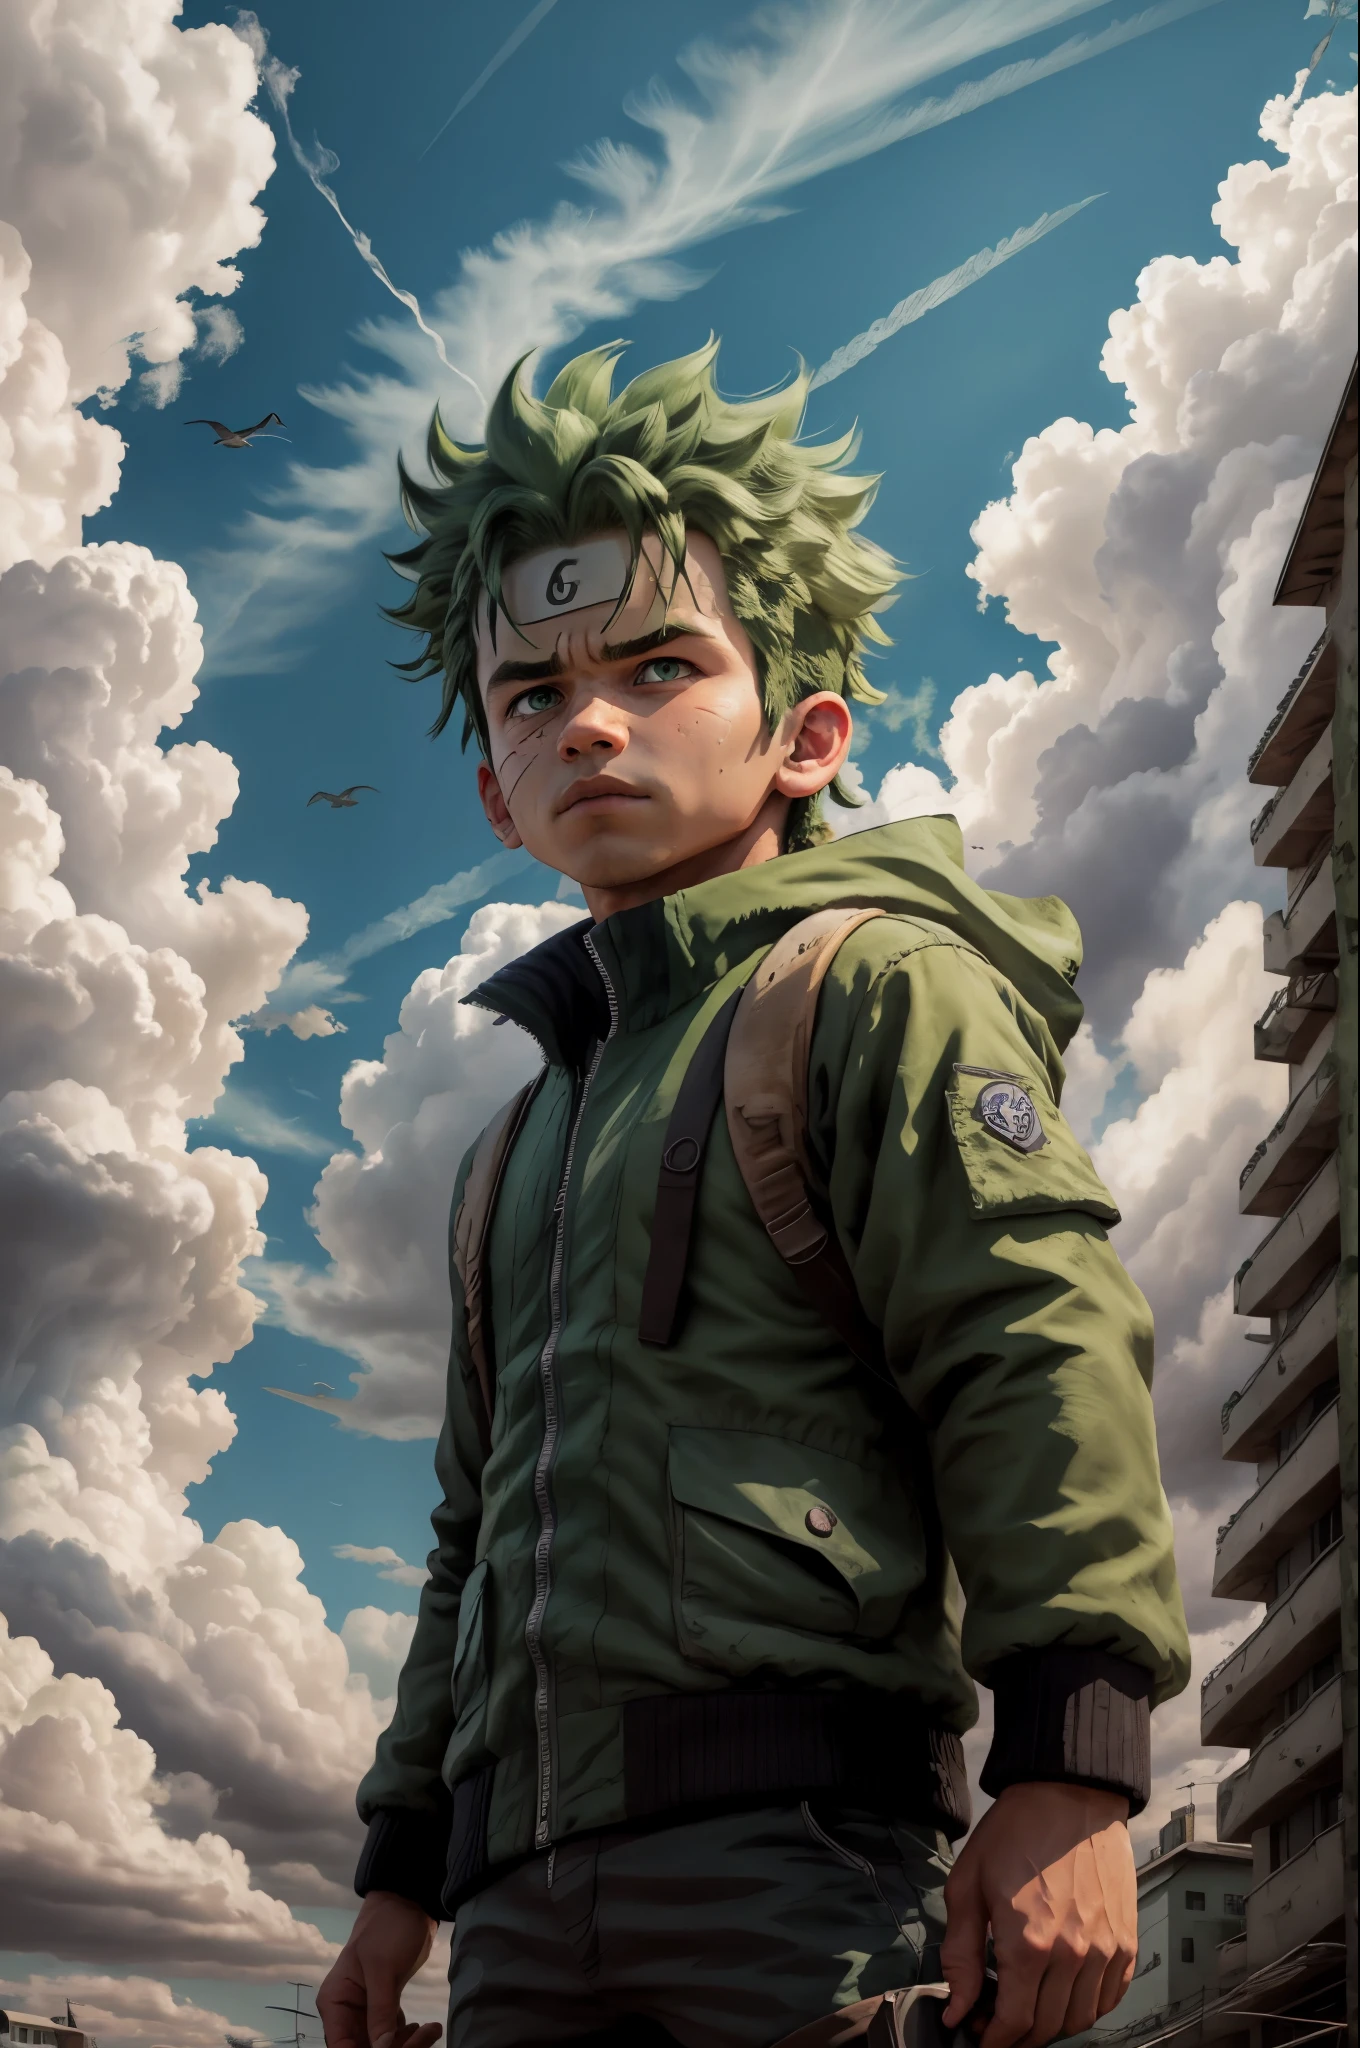 赤壁浩克, 1男孩, 男性 focus, 獨自的, 天空, 綠眼睛, 雲, 天, 鬍鬚標記, 鳥, blue 天空, 男性 , 夾克, 戶外, 上半身, 雲y 天空